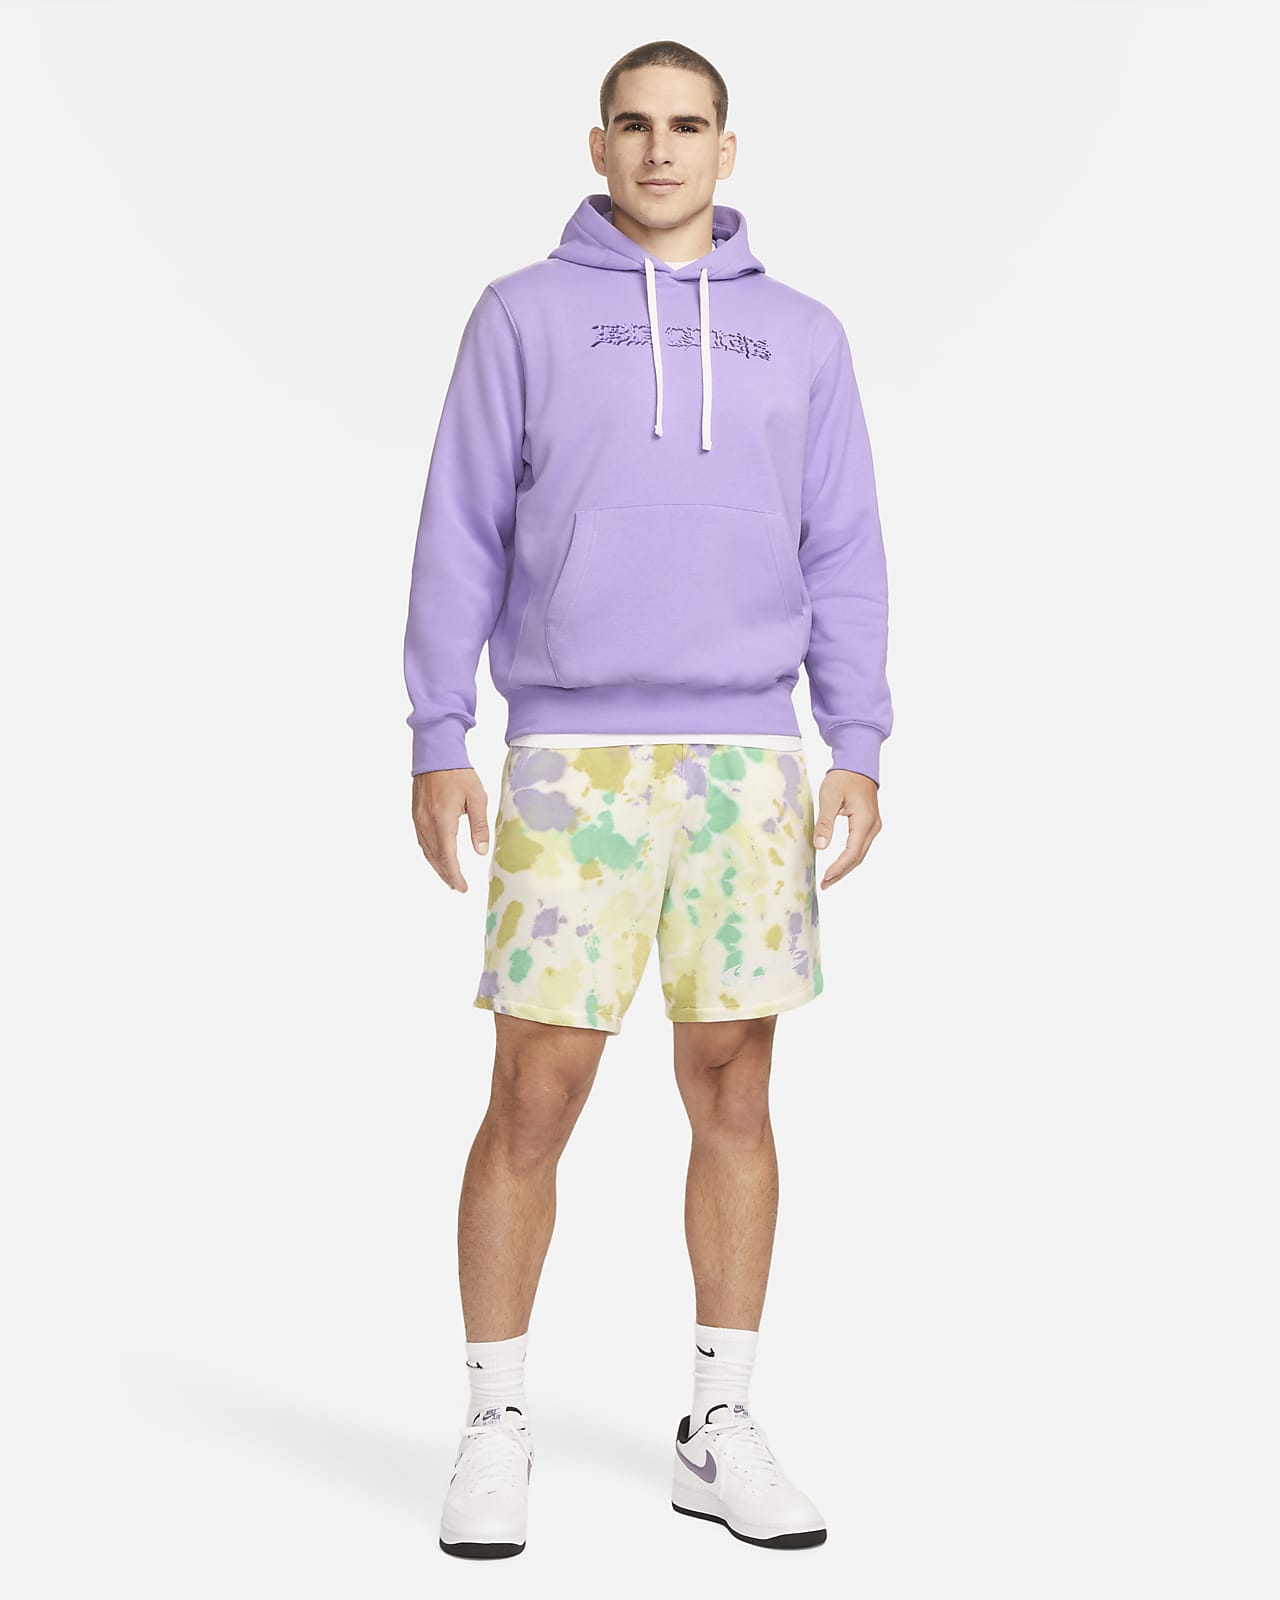 Nike Sportswear Club Fleece Pullover Hoodie - Mens – Canadian Pro